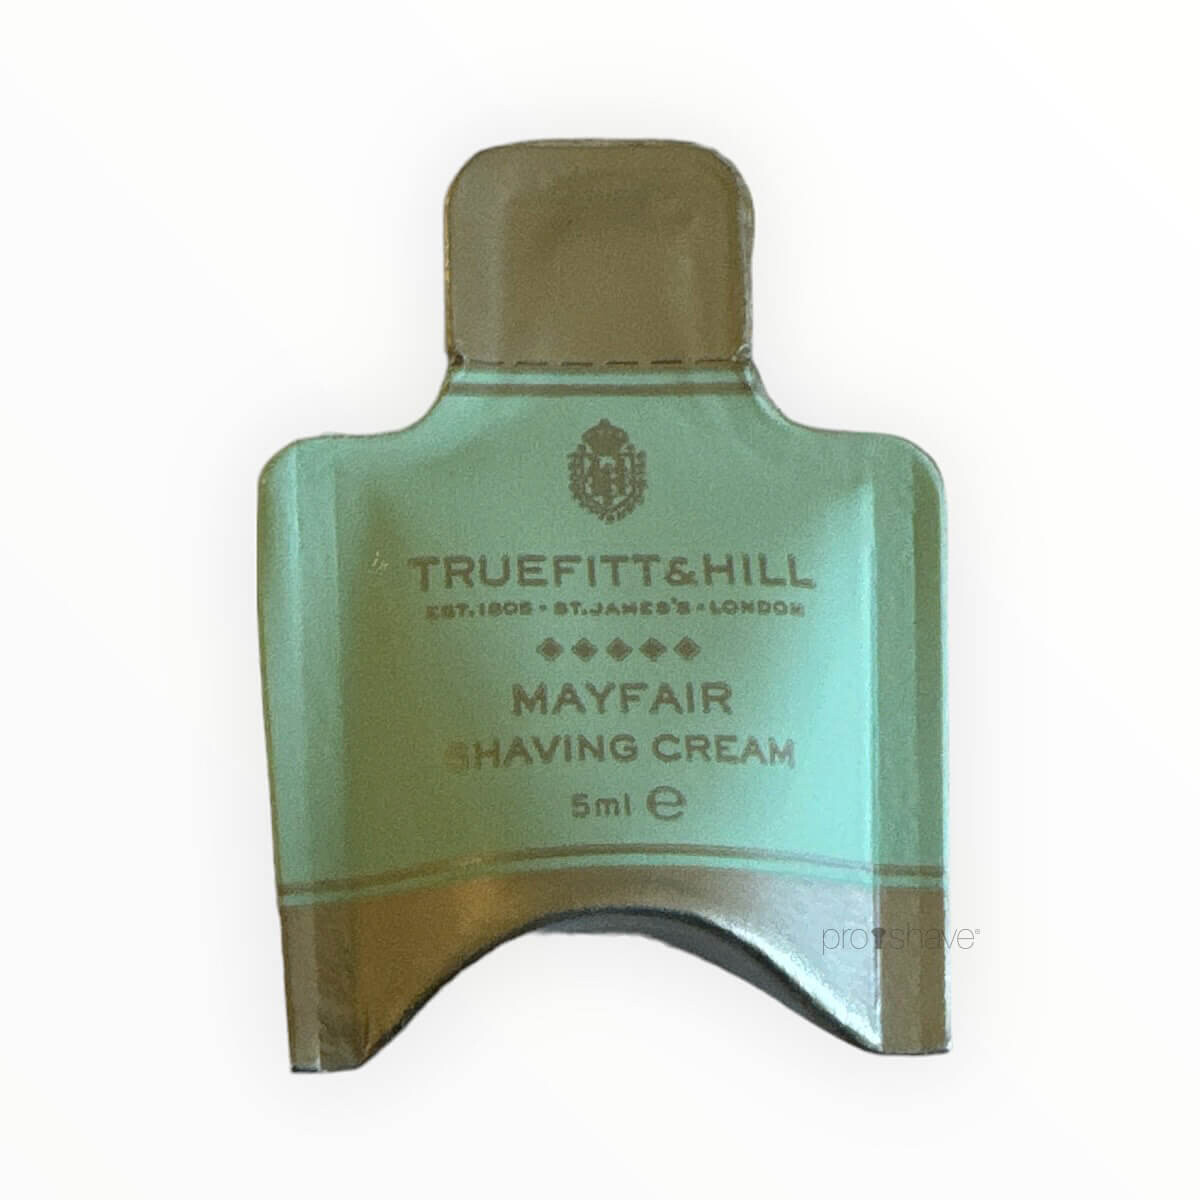 Se Truefitt & Hill Mayfair Shaving Cream Sample Pack, 5 ml. hos Proshave